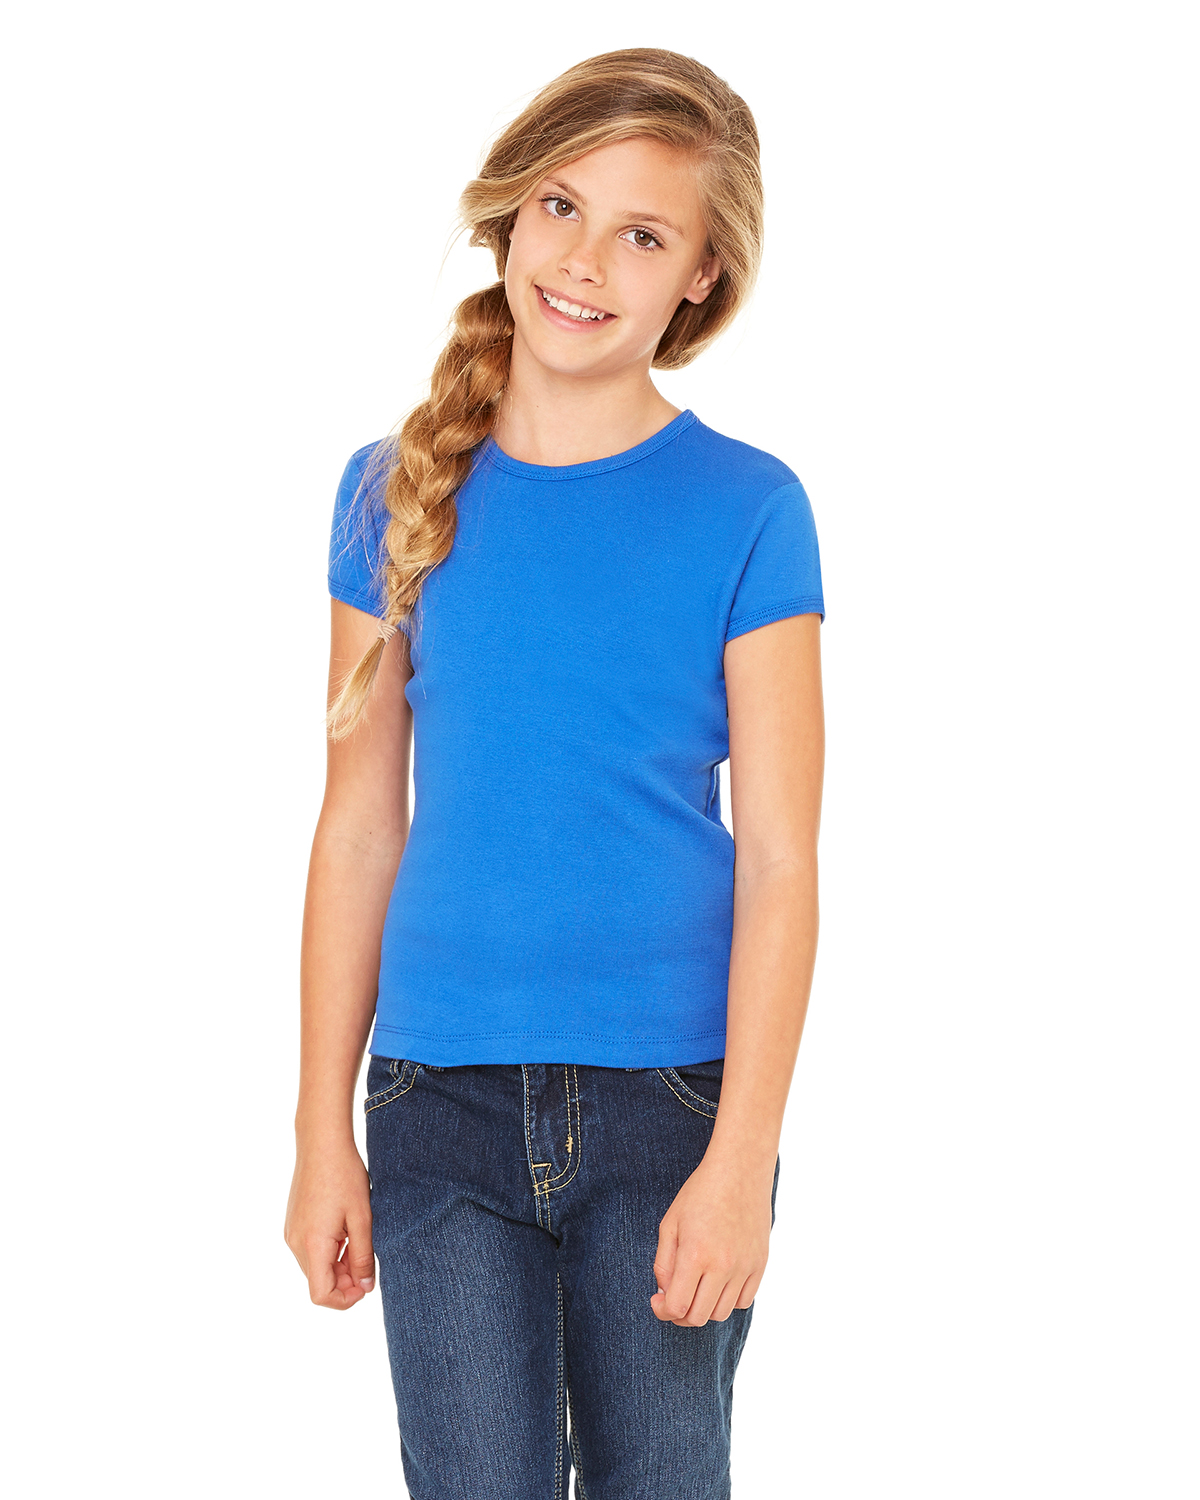 bella girl 9001 1x1 Rib Short Sleeve Crewneck T-Shirt